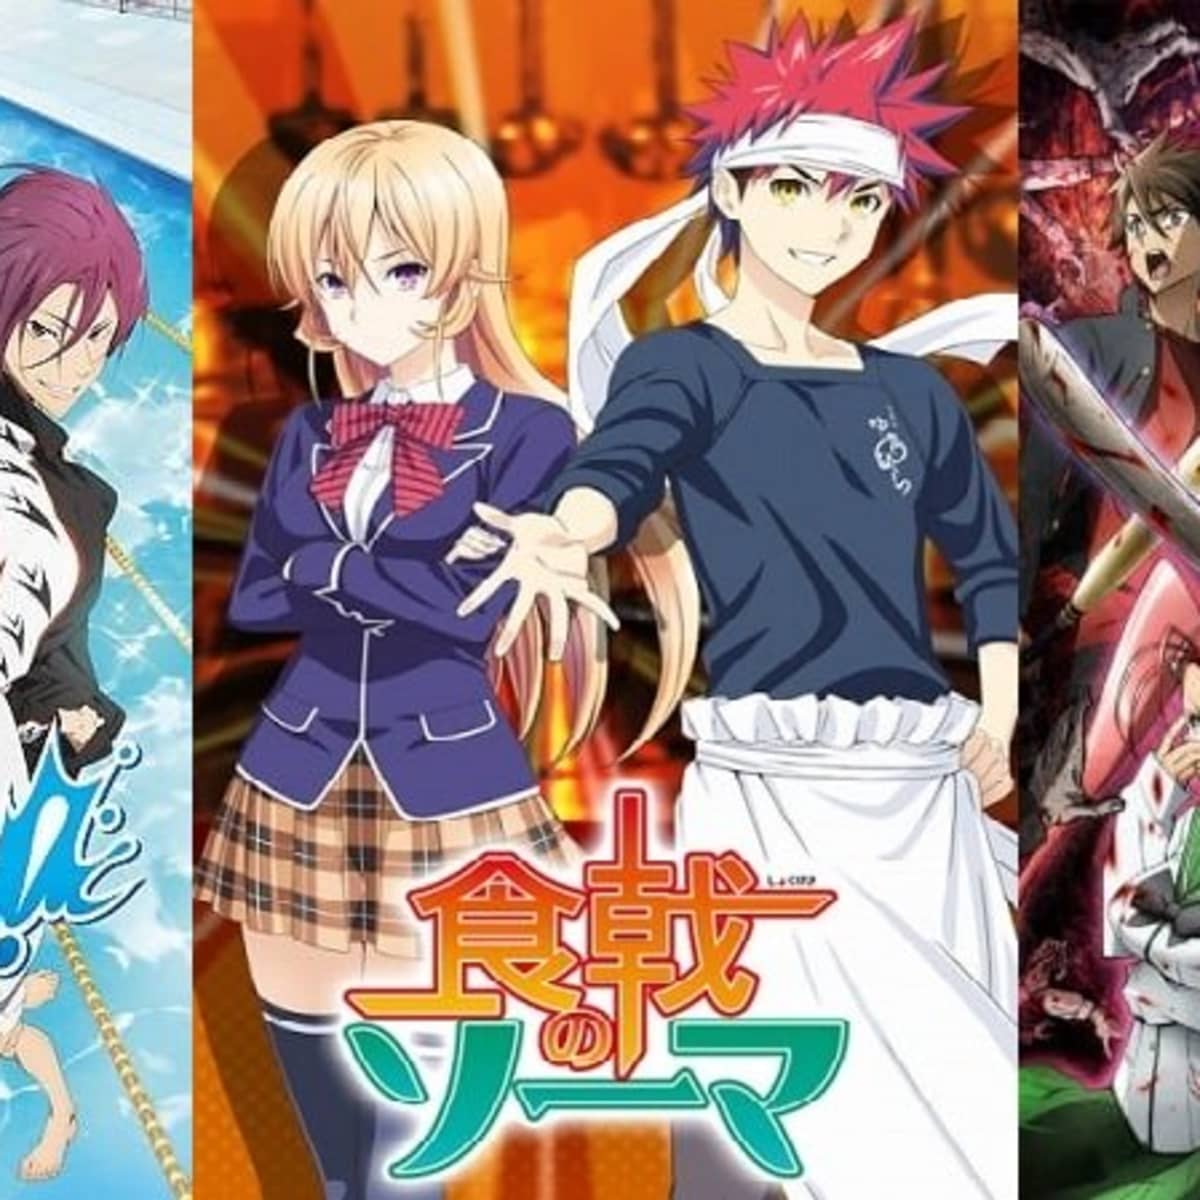 Top 10 Best Fan Service Anime - ReelRundown